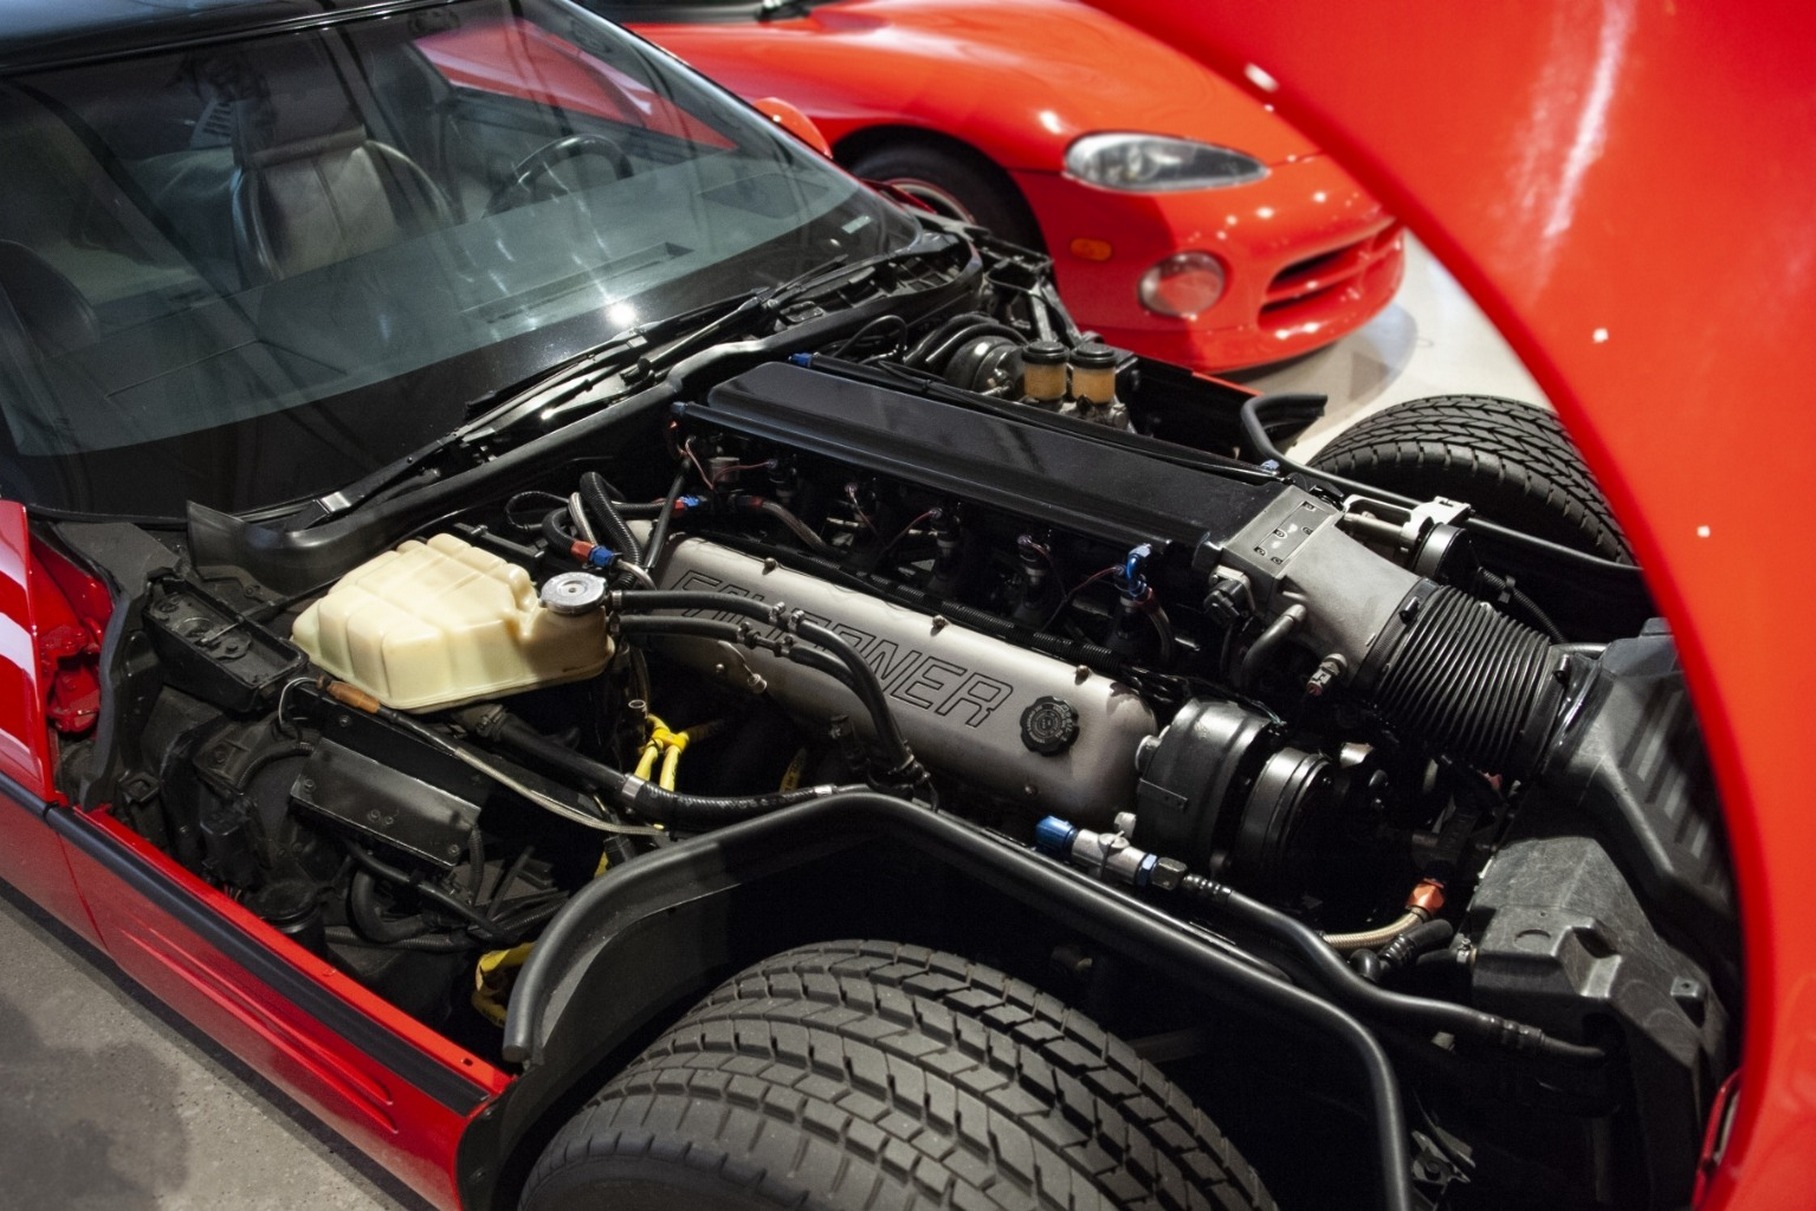 Инженеры прозвали сверхмощный Corvette «Конан» в честь главного героя боевика «Конан-варвар» с Арнольдом Шварценеггером. К счастью, уникальная машина сохранилась: её можно увидеть в музее Корветов в Боулинг-Грин.